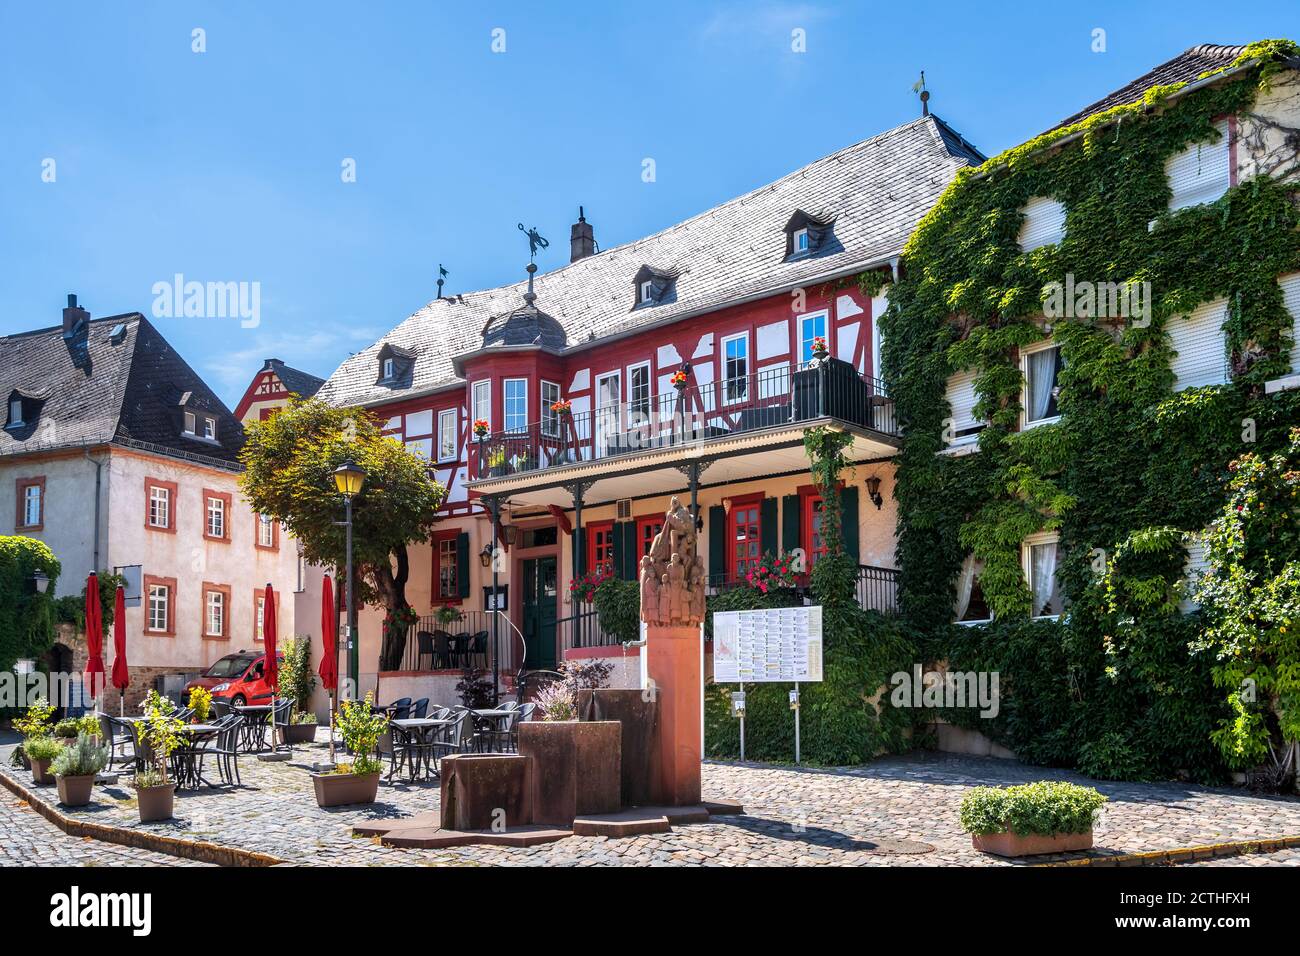 Historischer Markt von Kiedrich, Rheingau, Deutschland Stockfoto